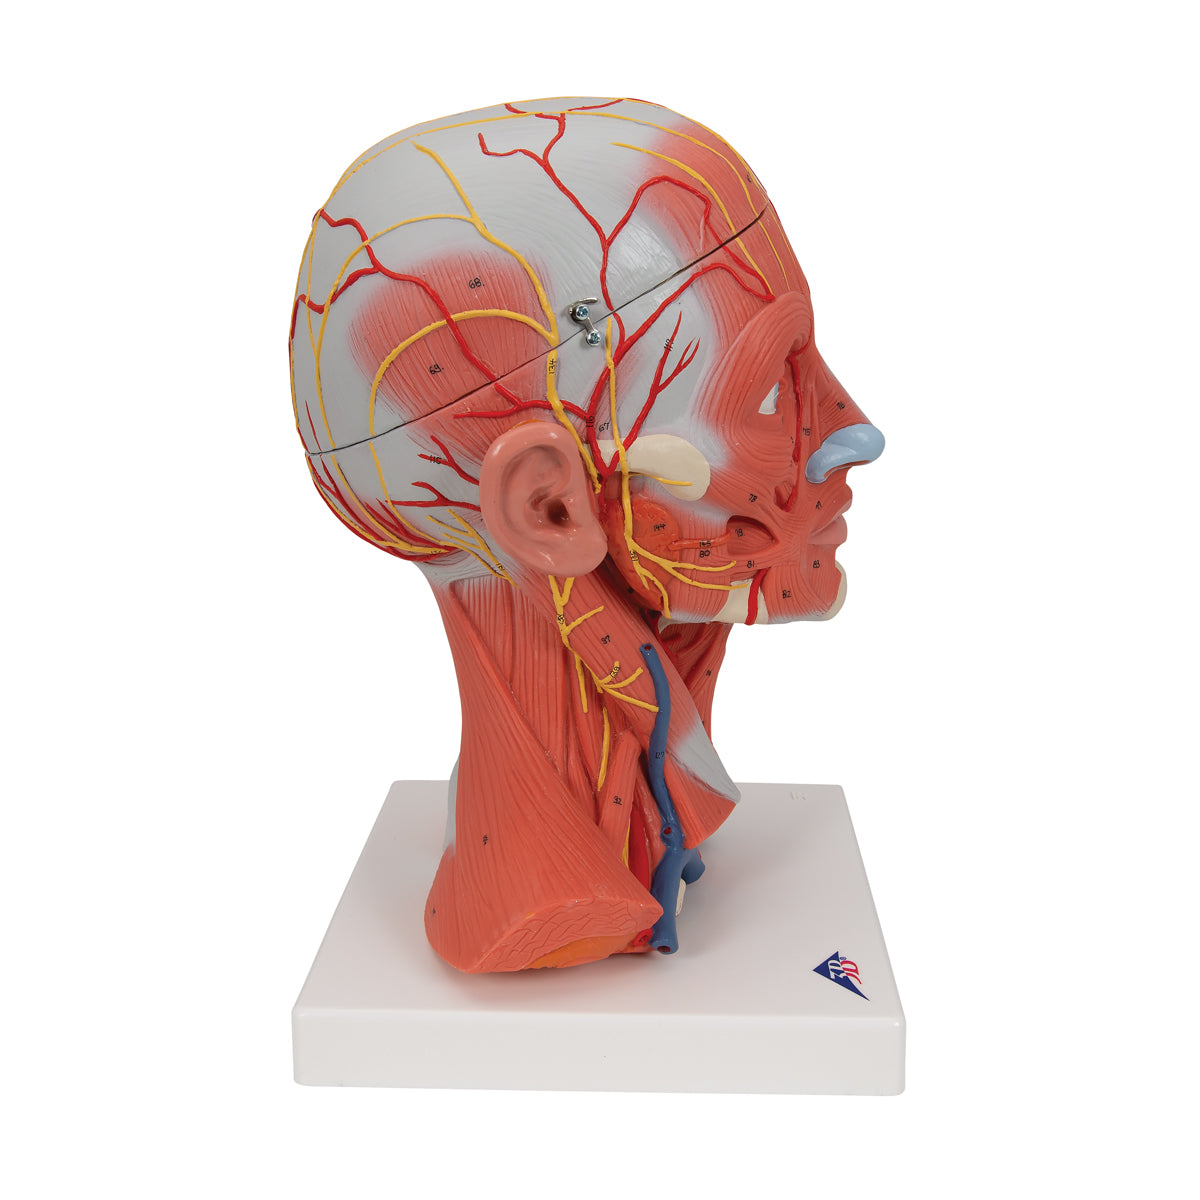 Modell av huvud- och nackemuskler i 5 delar